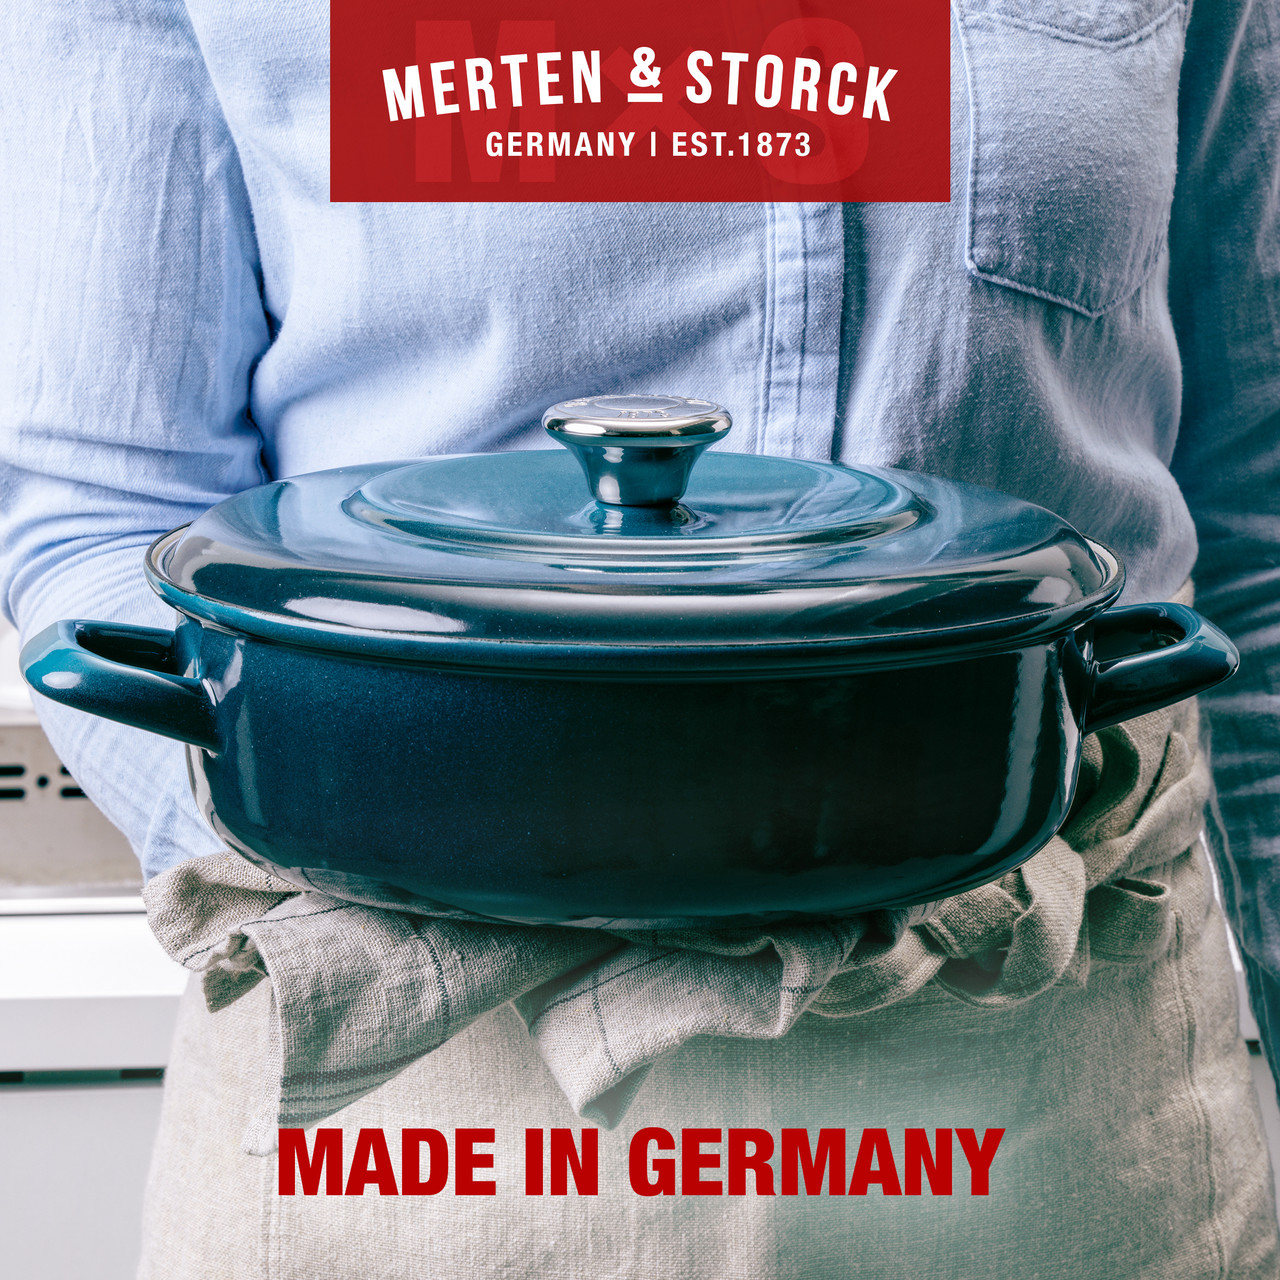 Merten & Storck German Enameled Iron 4 Quart Dutch Oven